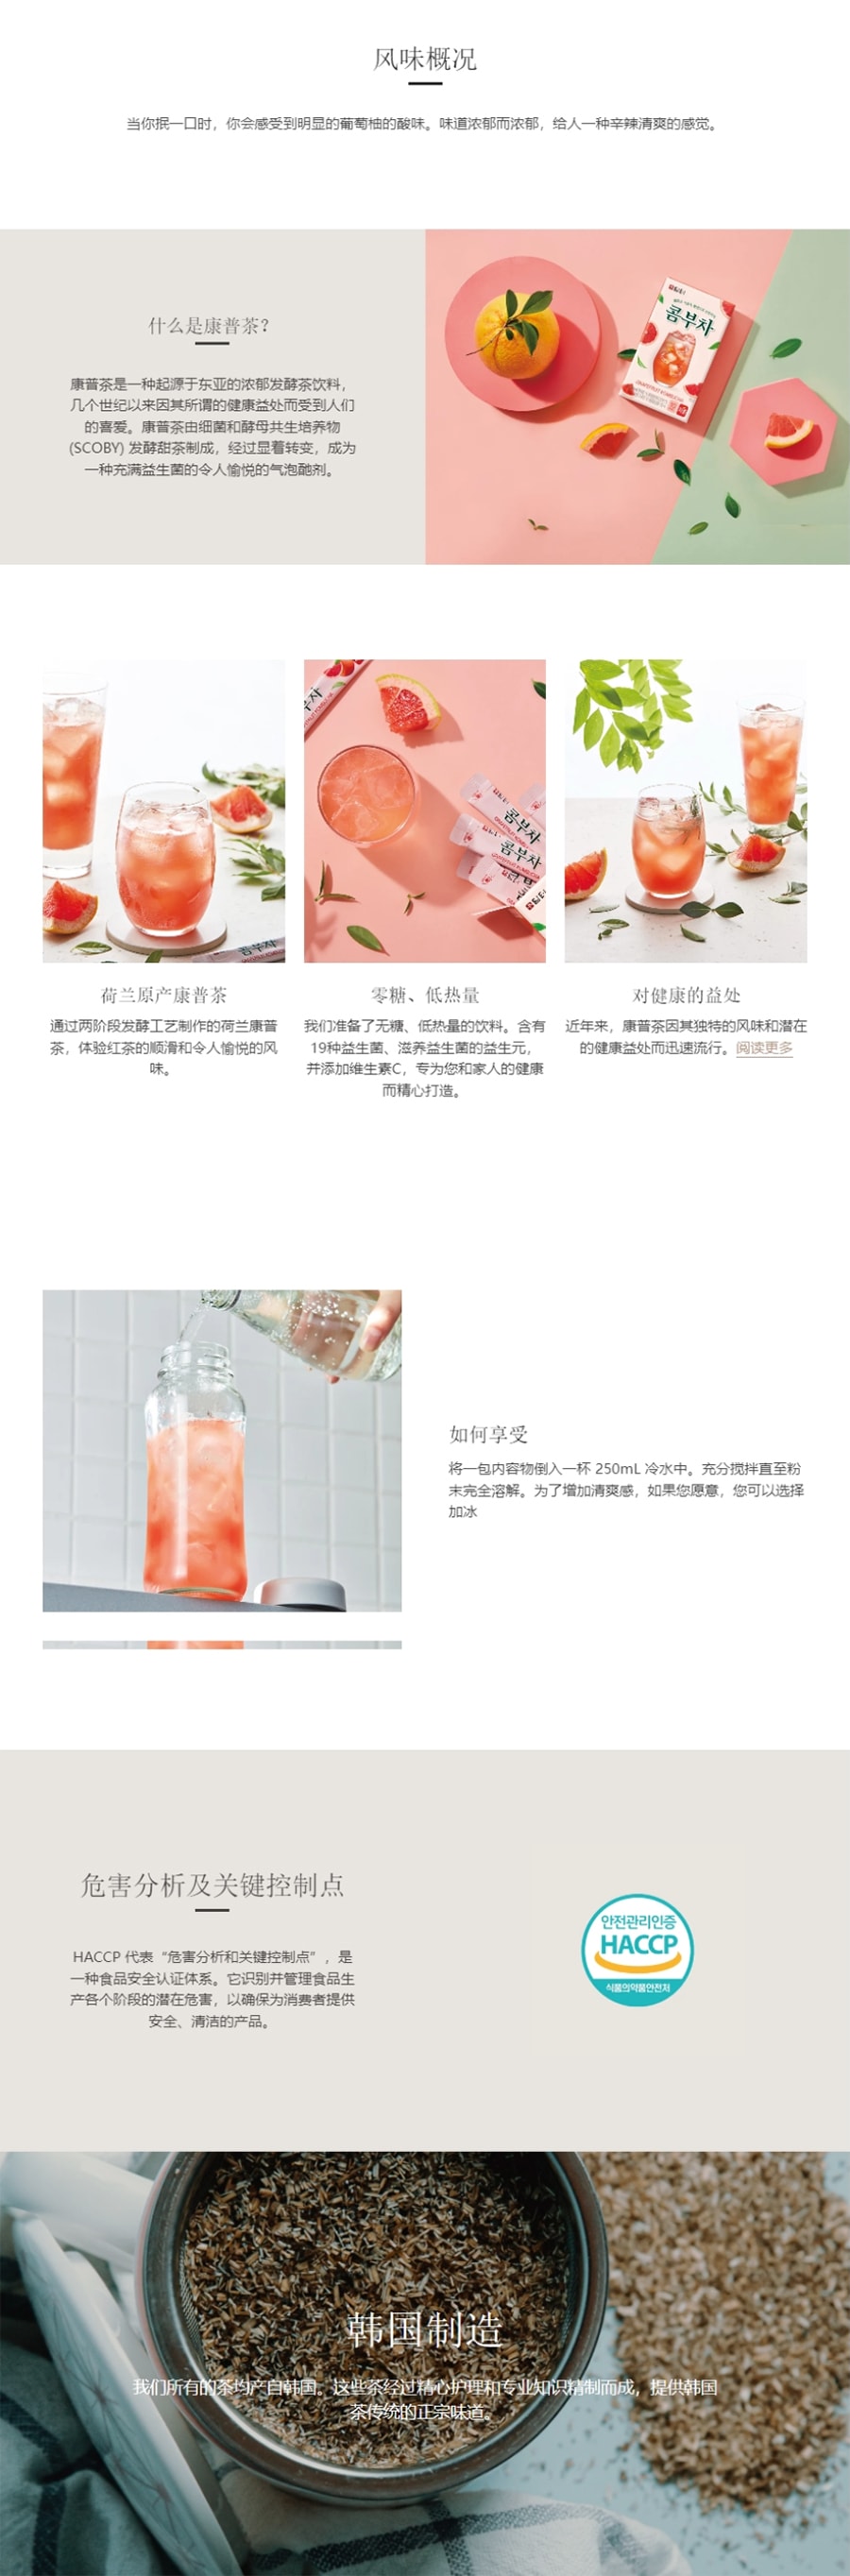 韩国DAMTUH丹特 康普茶葡萄柚 5g x 10 片